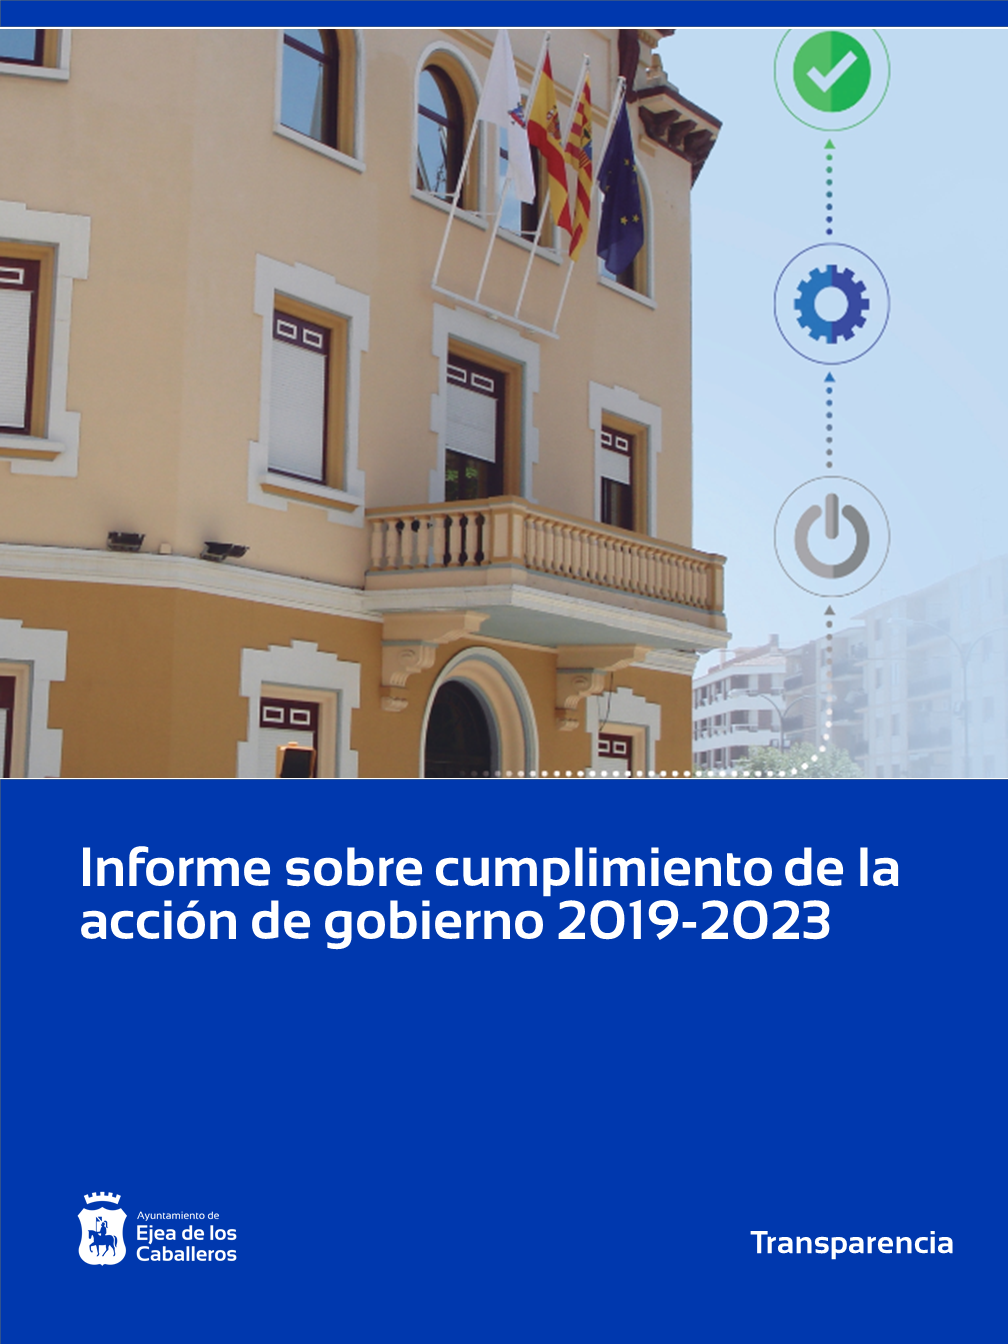 En este momento estás viendo El Ayuntamiento de Ejea de los Caballeros presenta el informe de cumplimiento de la acción de gobierno 2019 – 2023